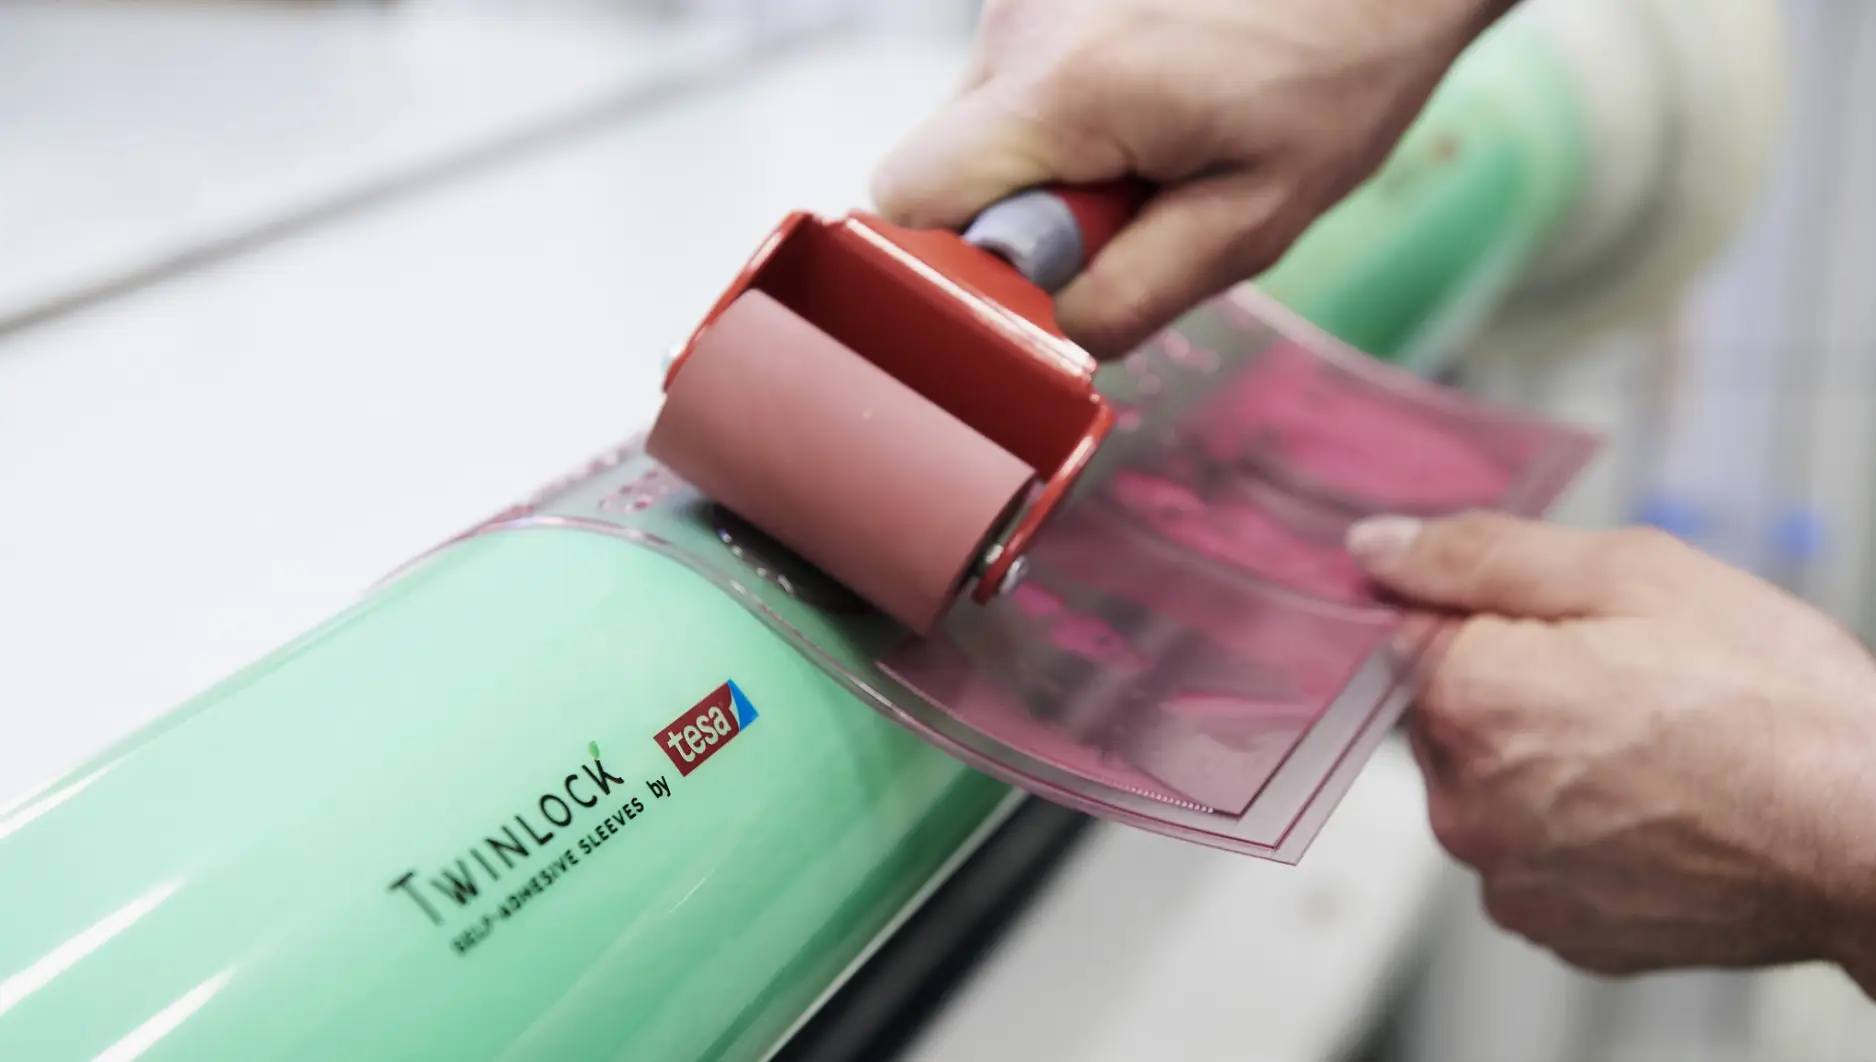 Impresión y papel: el concepto único de tesa® Twinlock ofrece una solución sostenible y reutilizable para el sector de la impresión flexográfica. Este proceso se utiliza, entre otras cosas, para imprimir envases de alimentos.